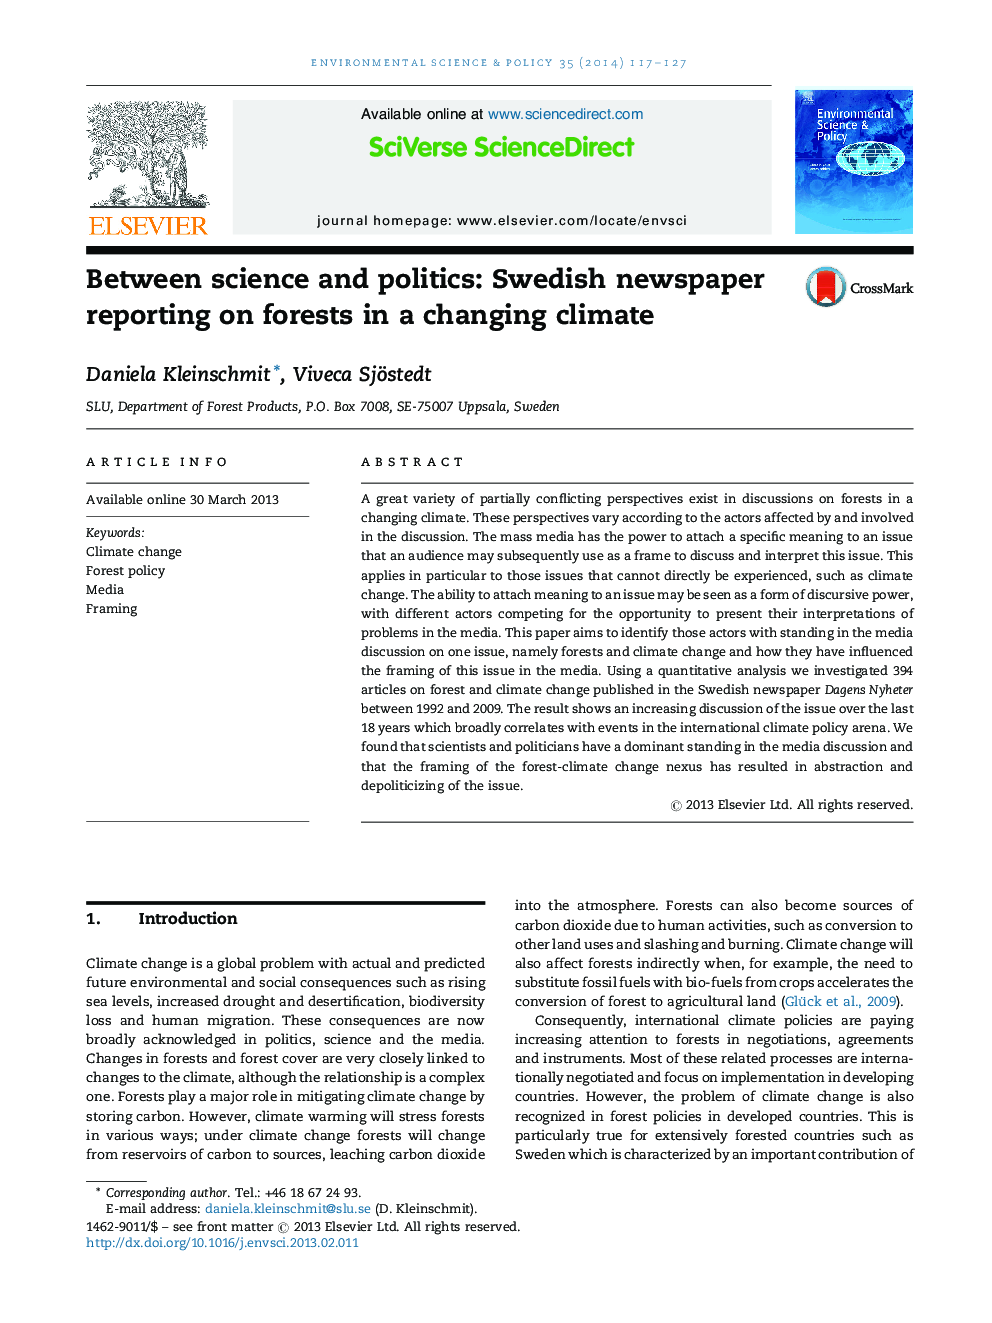 بین علم و سیاست: روزنامه سوئدی گزارش در مورد جنگل ها در شرایط آب و هوایی متغیر است 